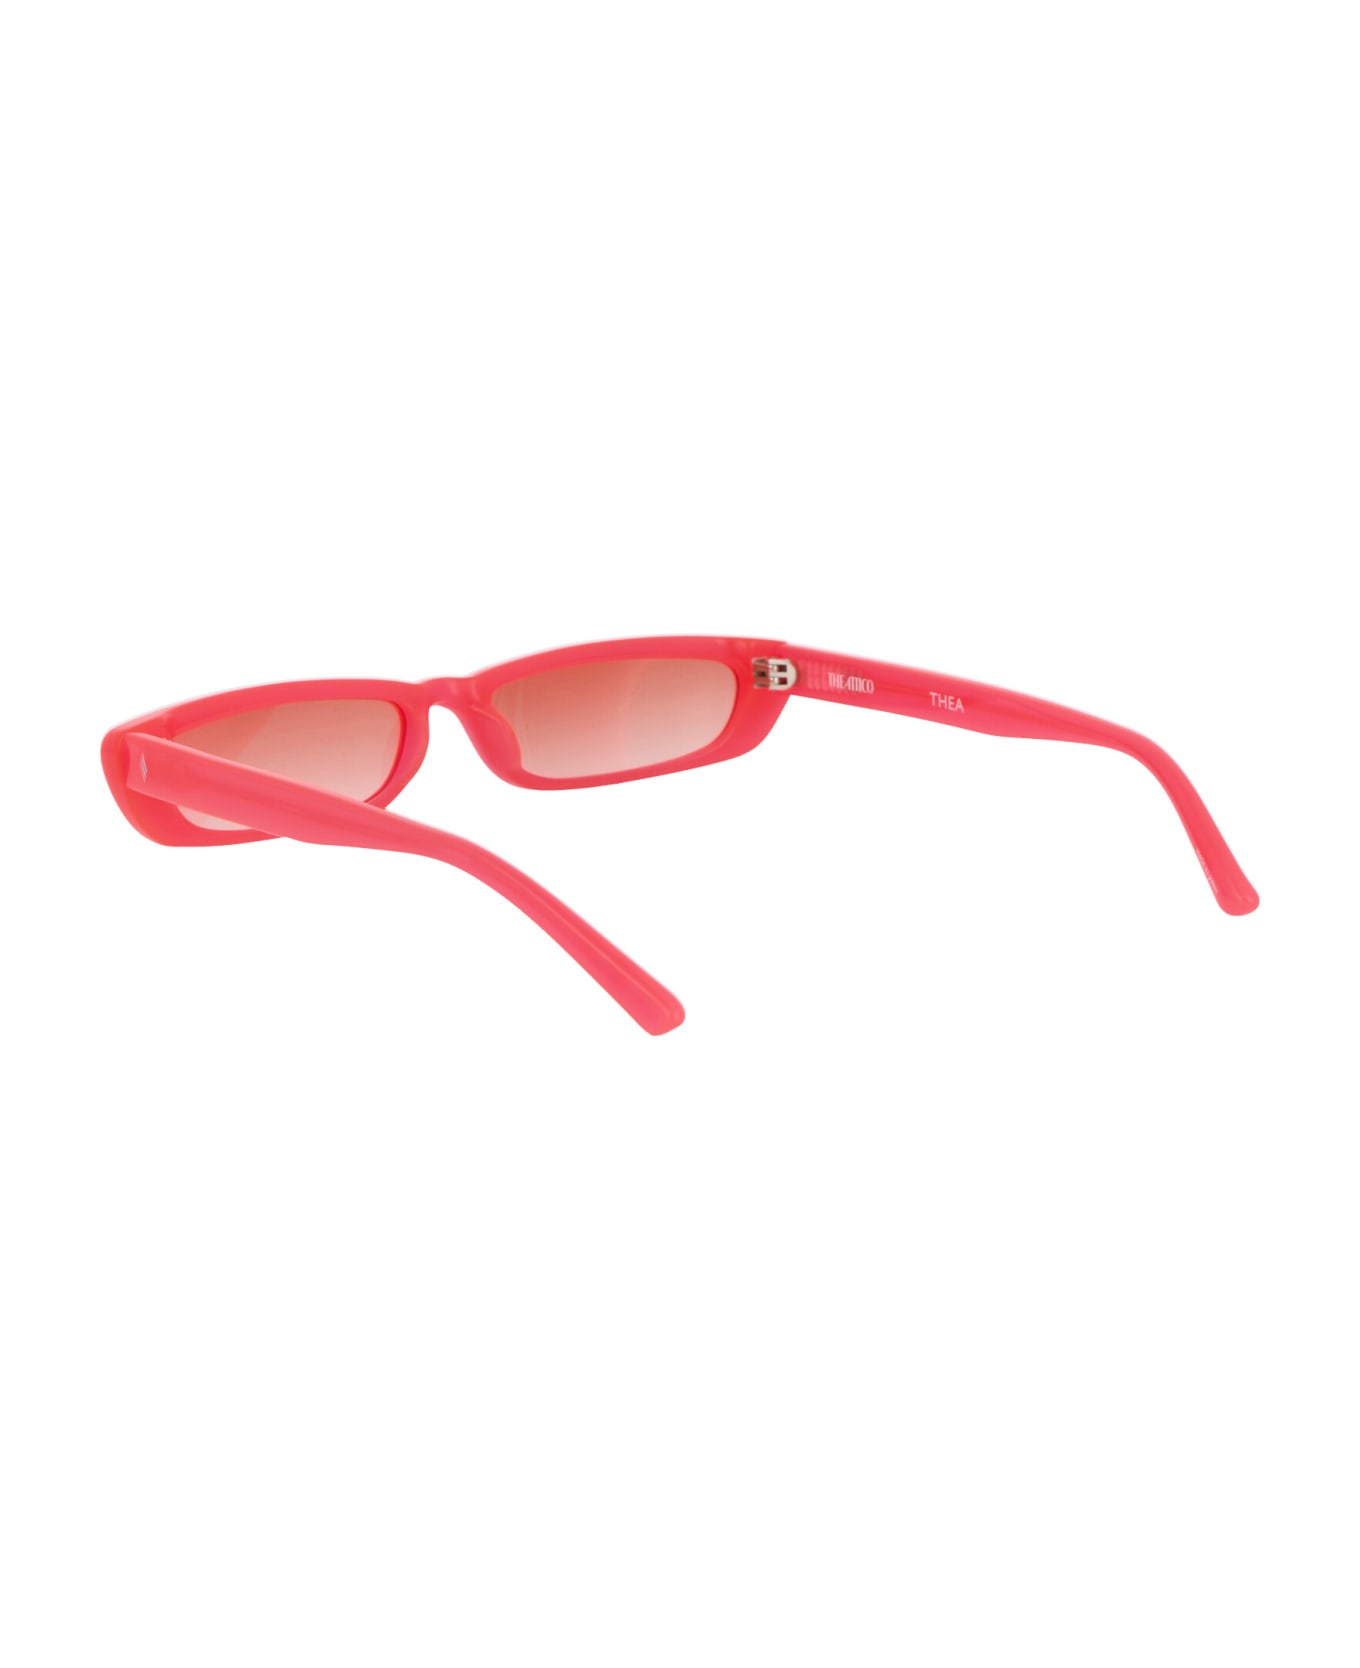 The Attico Thea Sunglasses - NEONPINK/SILVER/ORANGEGRAD